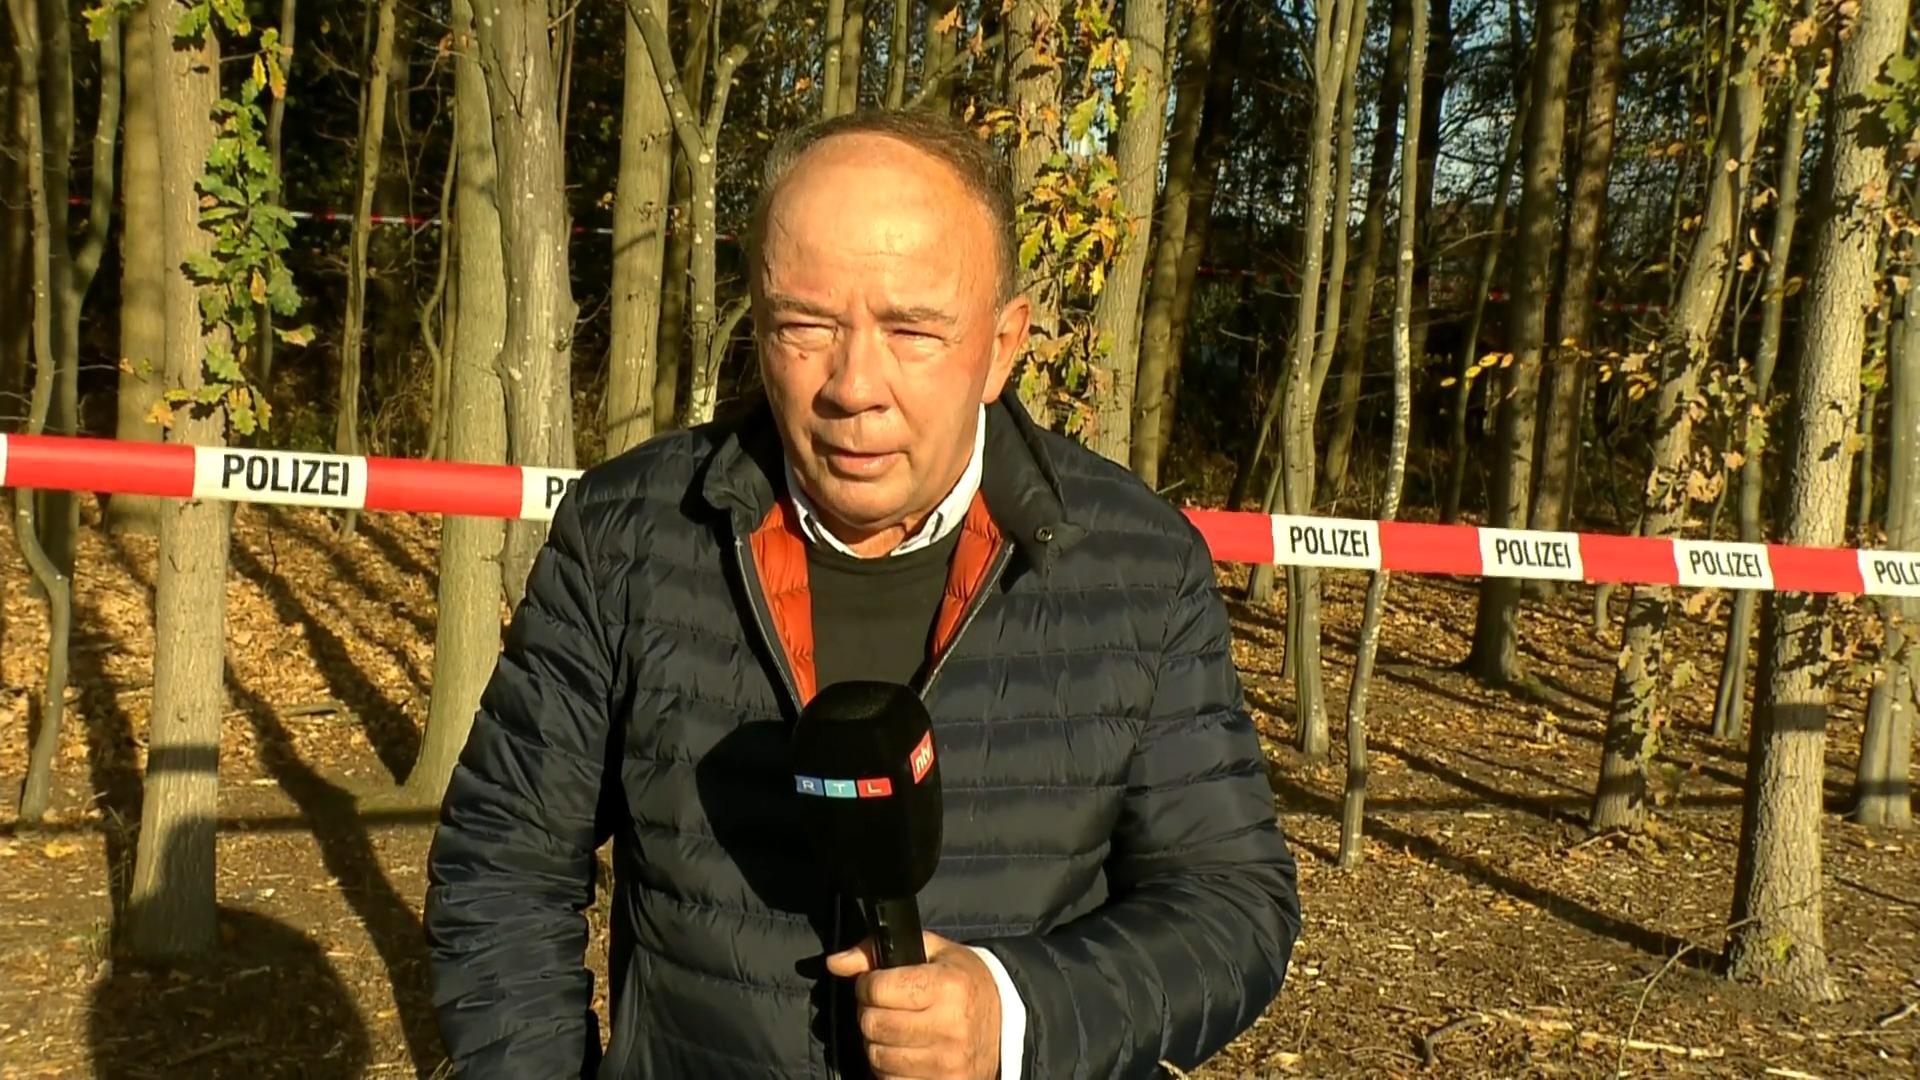 "Wer Kabelbinder in der Tasche hat, hat irgendwas vor" RTL-Reporter Klose in Ostbevern